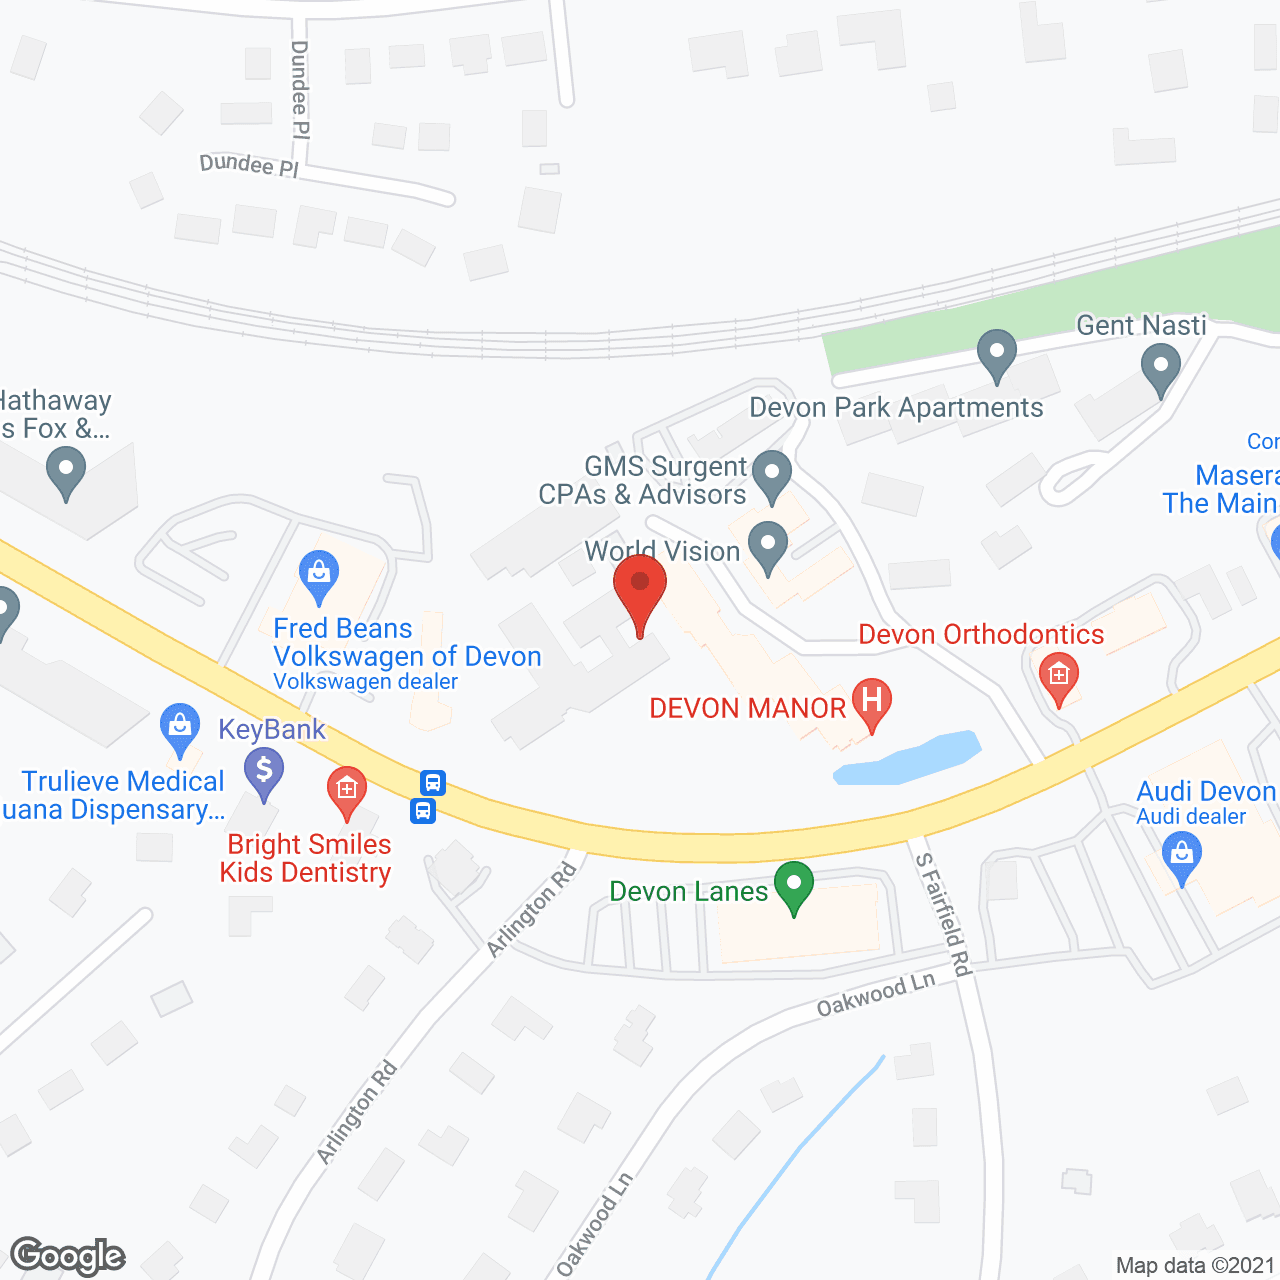 Devon Manor in google map